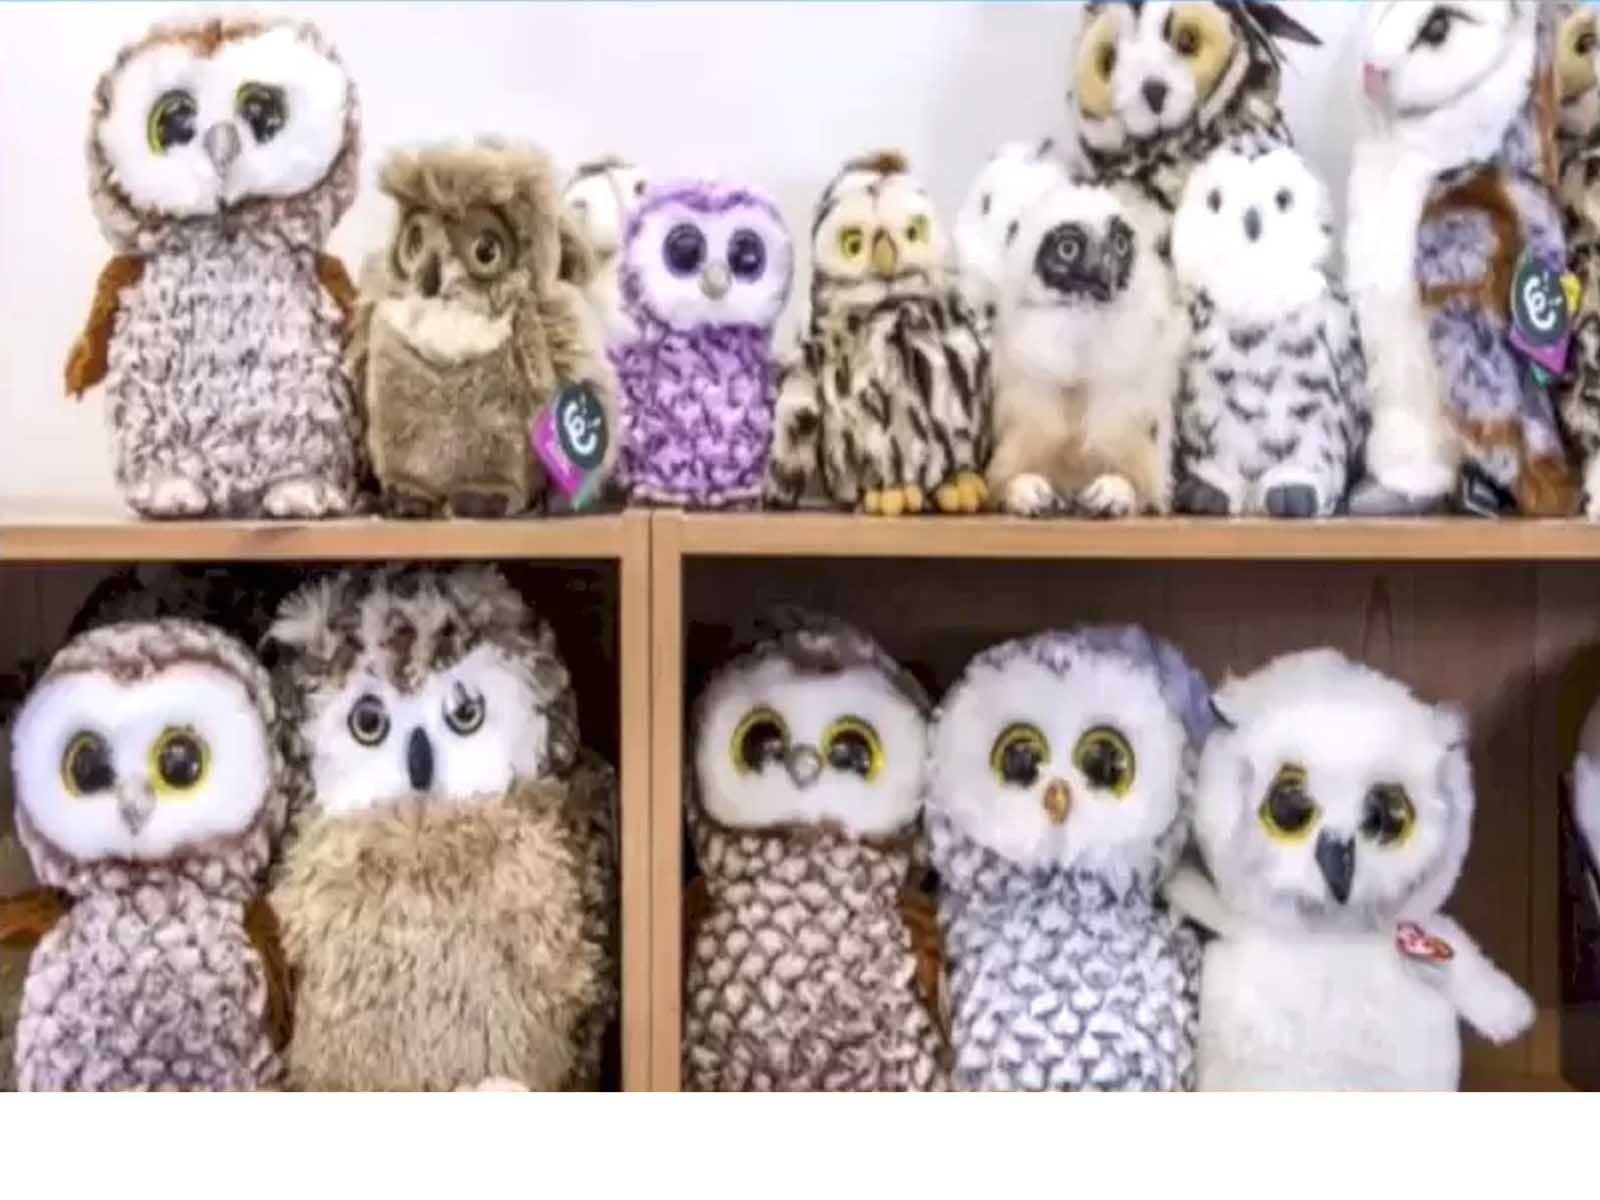 Spot The Hidden Owl: ਨਕਲੀ ਉੱਲੂਆਂ 'ਚੋਂ ਅਸਲੀ ਦੀ ਕਰੋ ਪਛਾਣ, ਜਵਾਬ ਜਾਣਨ ਲਈ ਪੜ੍ਹੋ ਖਬਰ